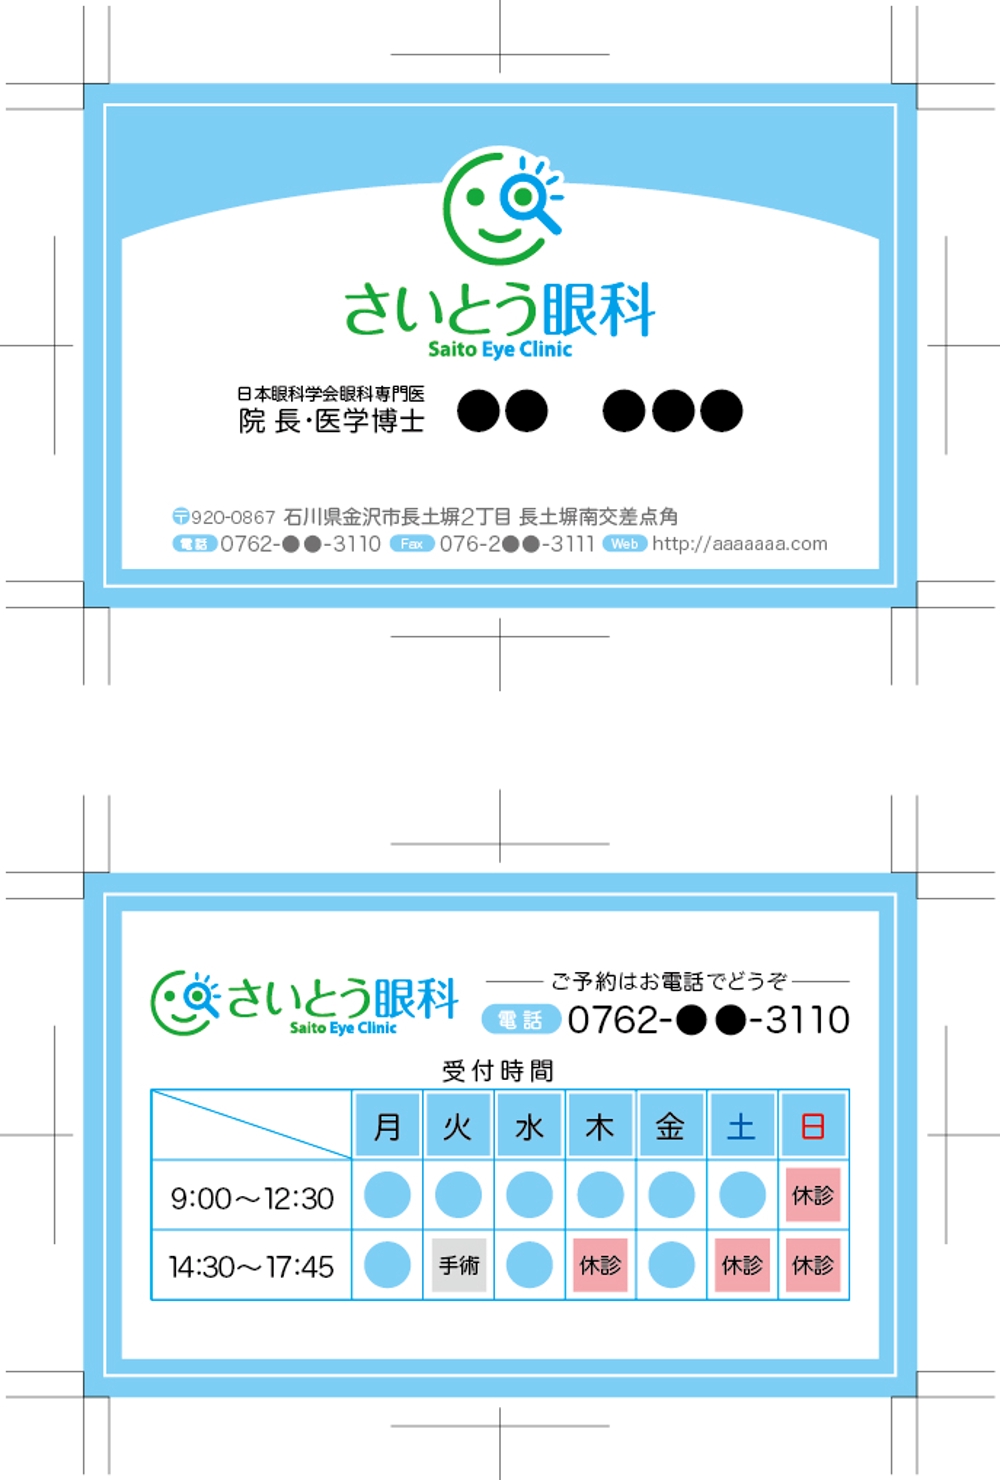 saitou_eyeclinic_logo_02.jpg